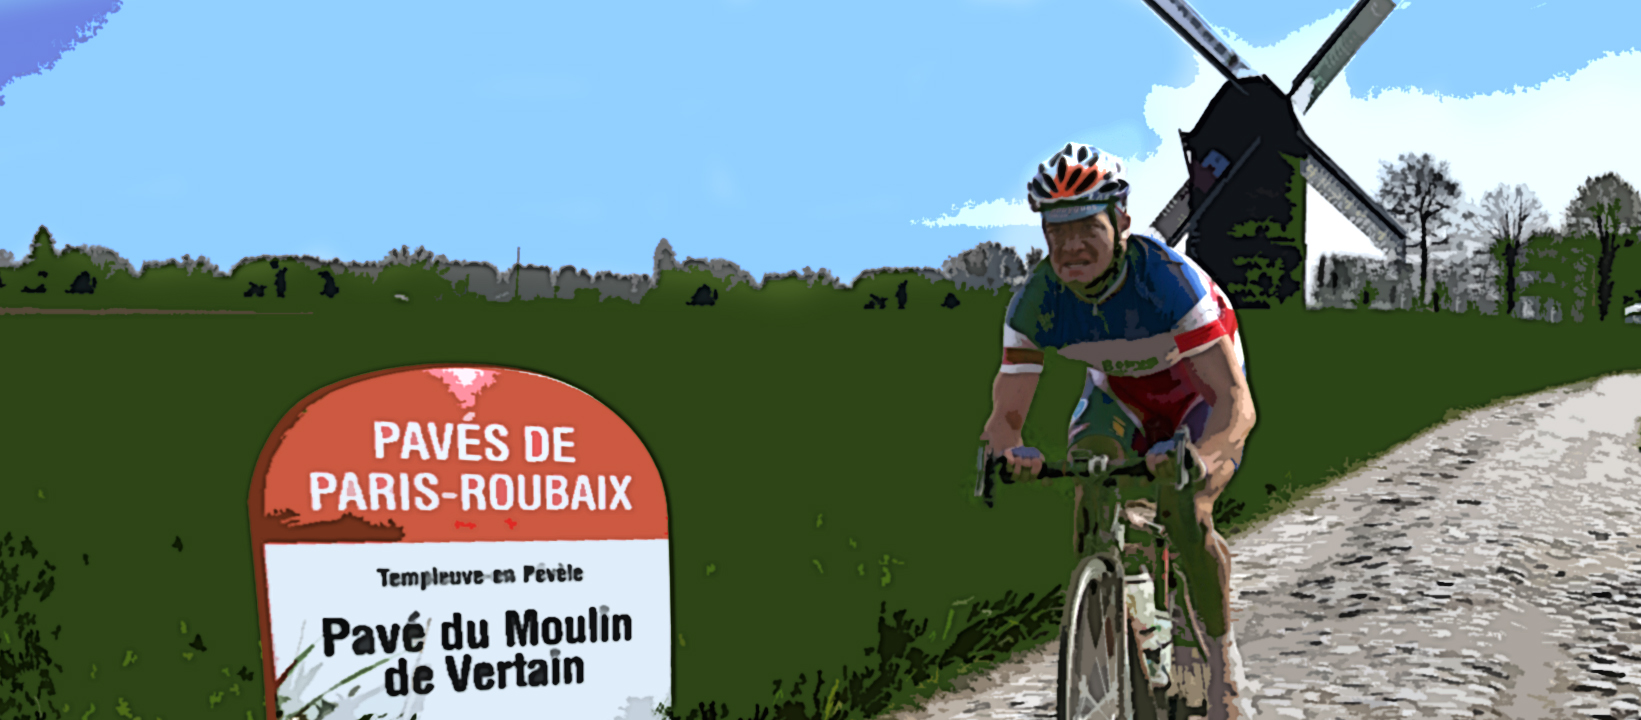 Ce qu’il faut savoir sur le passage du Paris-Roubaix à Templeuve-en-Pévèle